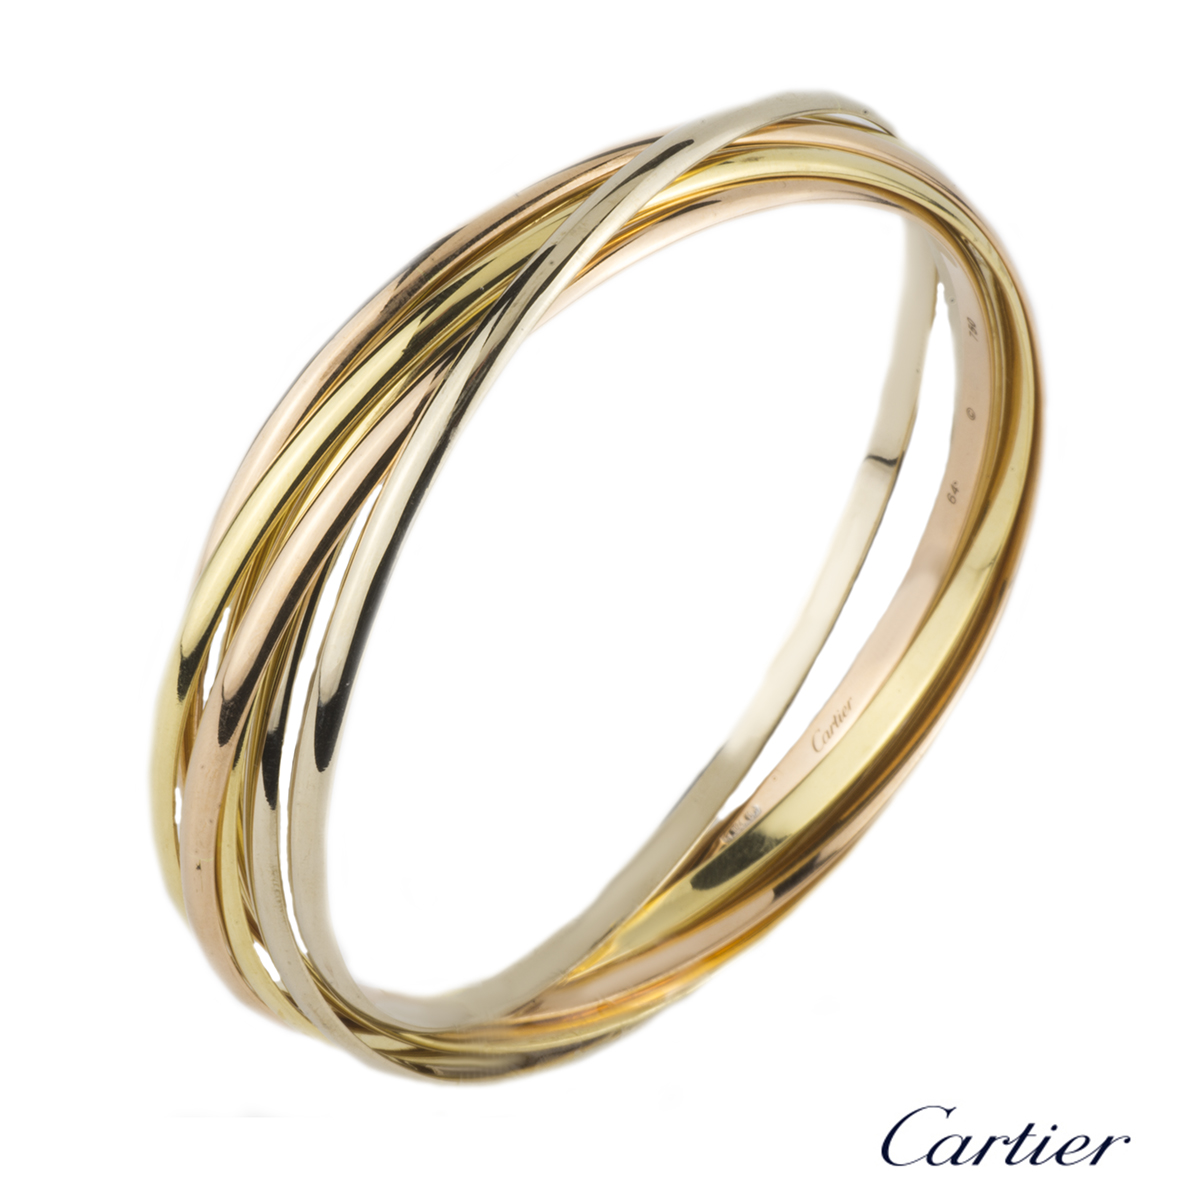 Authentic Cartier Trinity Bracelet #260-005-964-8697 | eBay